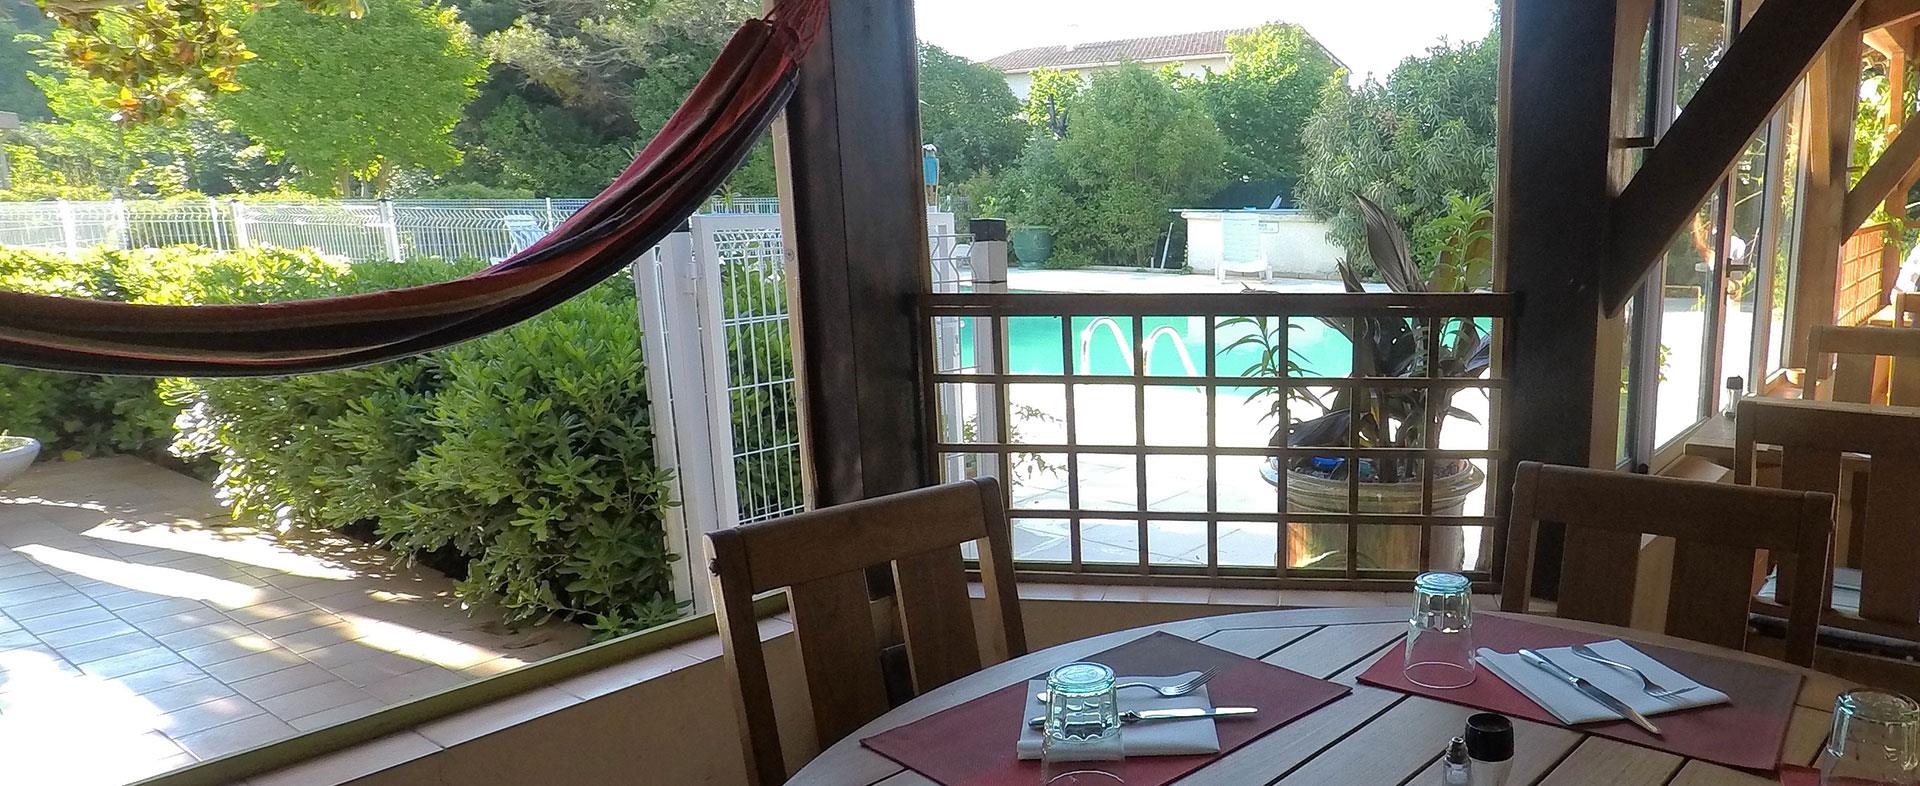 Terrasse avec vue sur la piscine du restaurant de l'hostellerie Saint-Benoit à Aniane